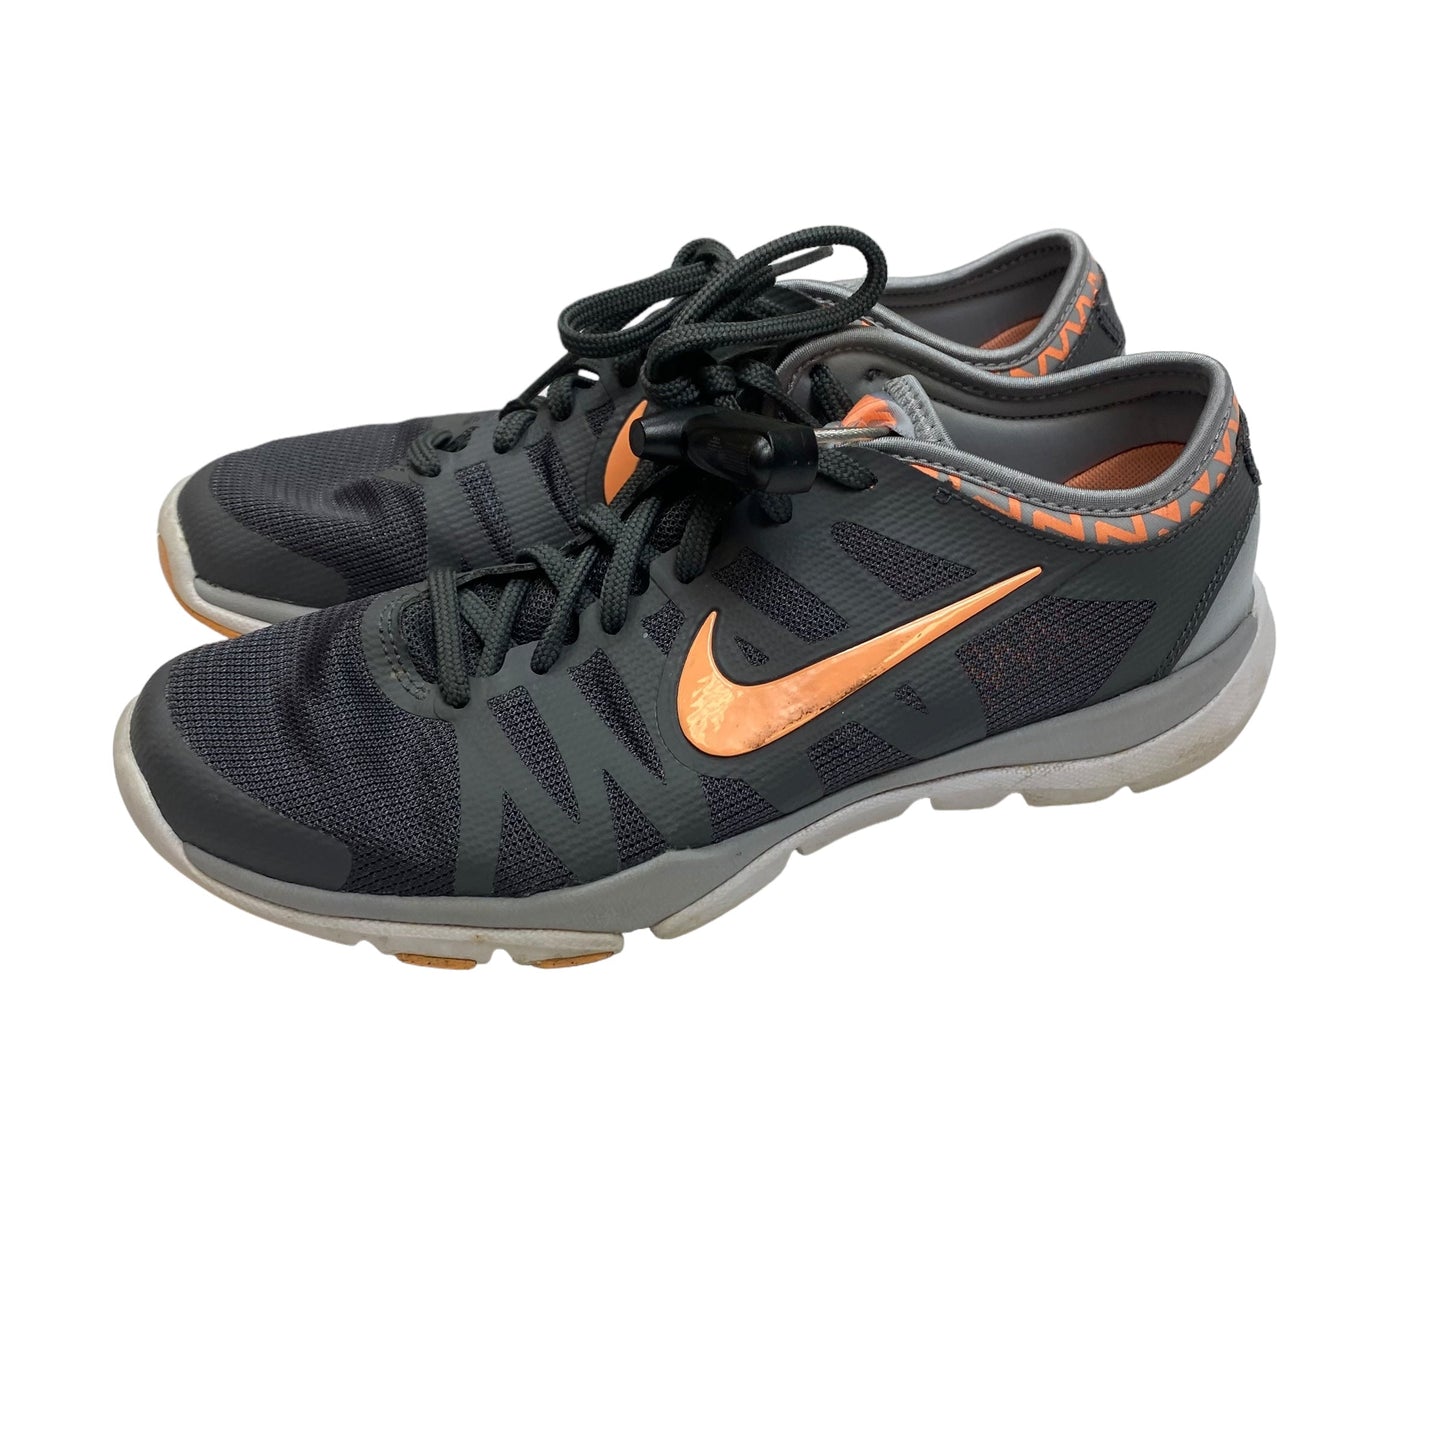 Grey Shoes Athletic Nike, Size 8